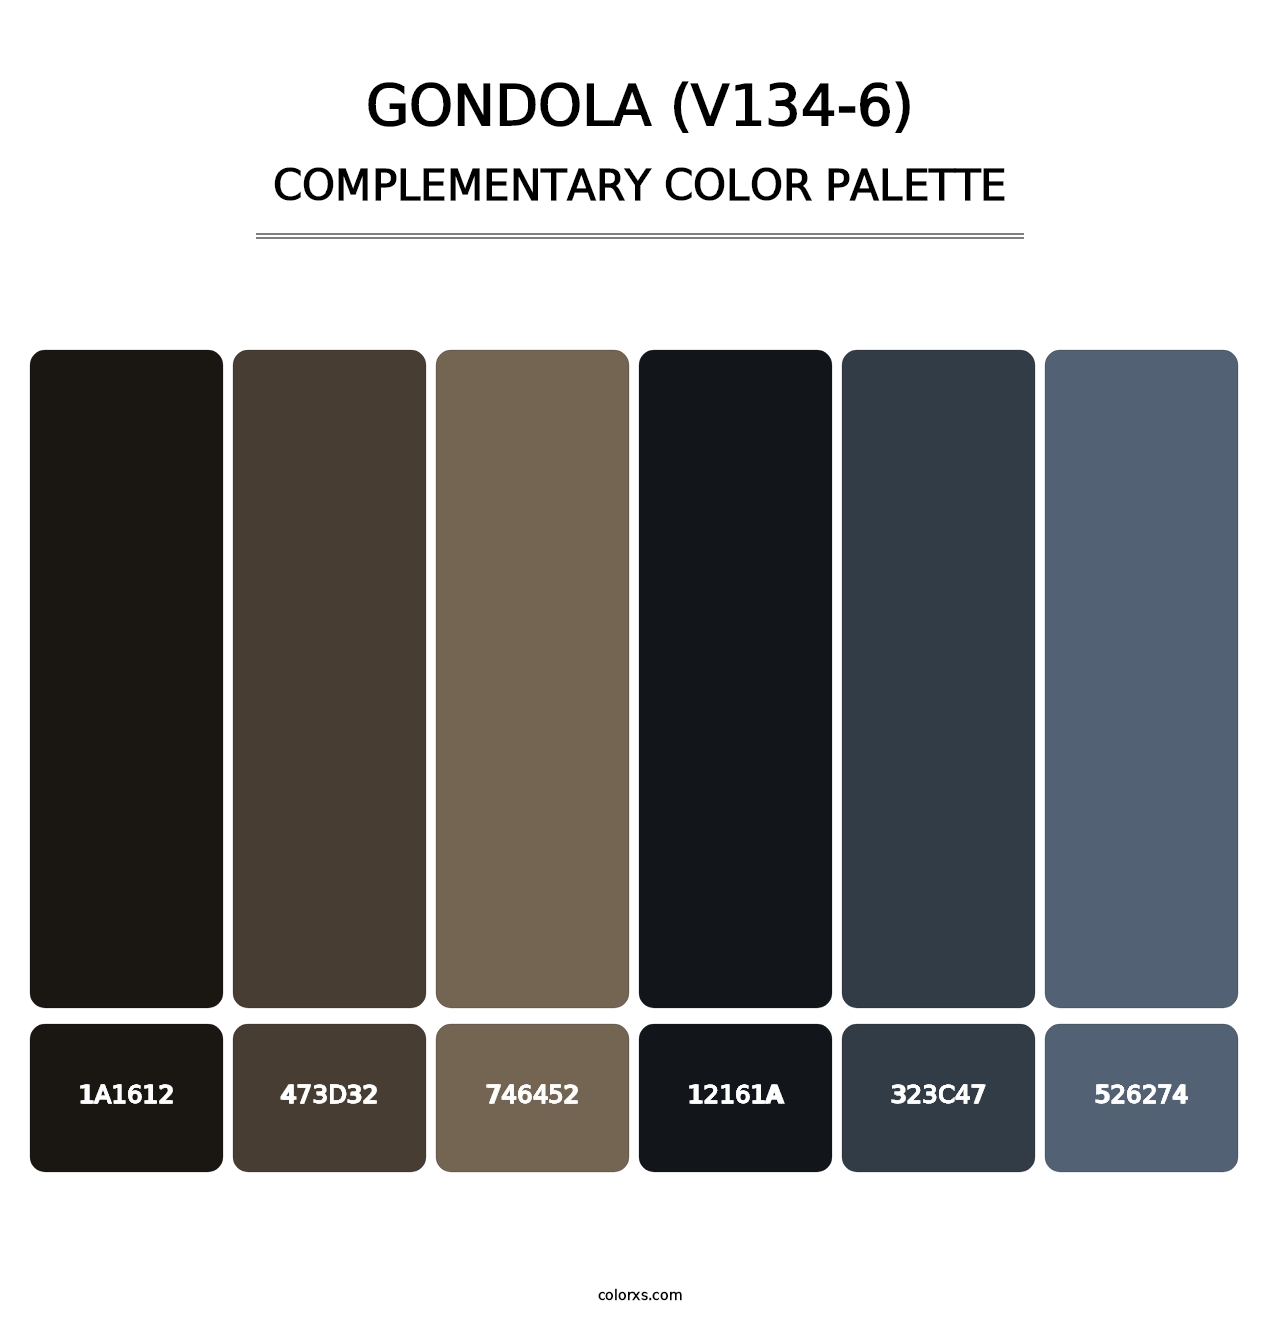 Gondola (V134-6) - Complementary Color Palette